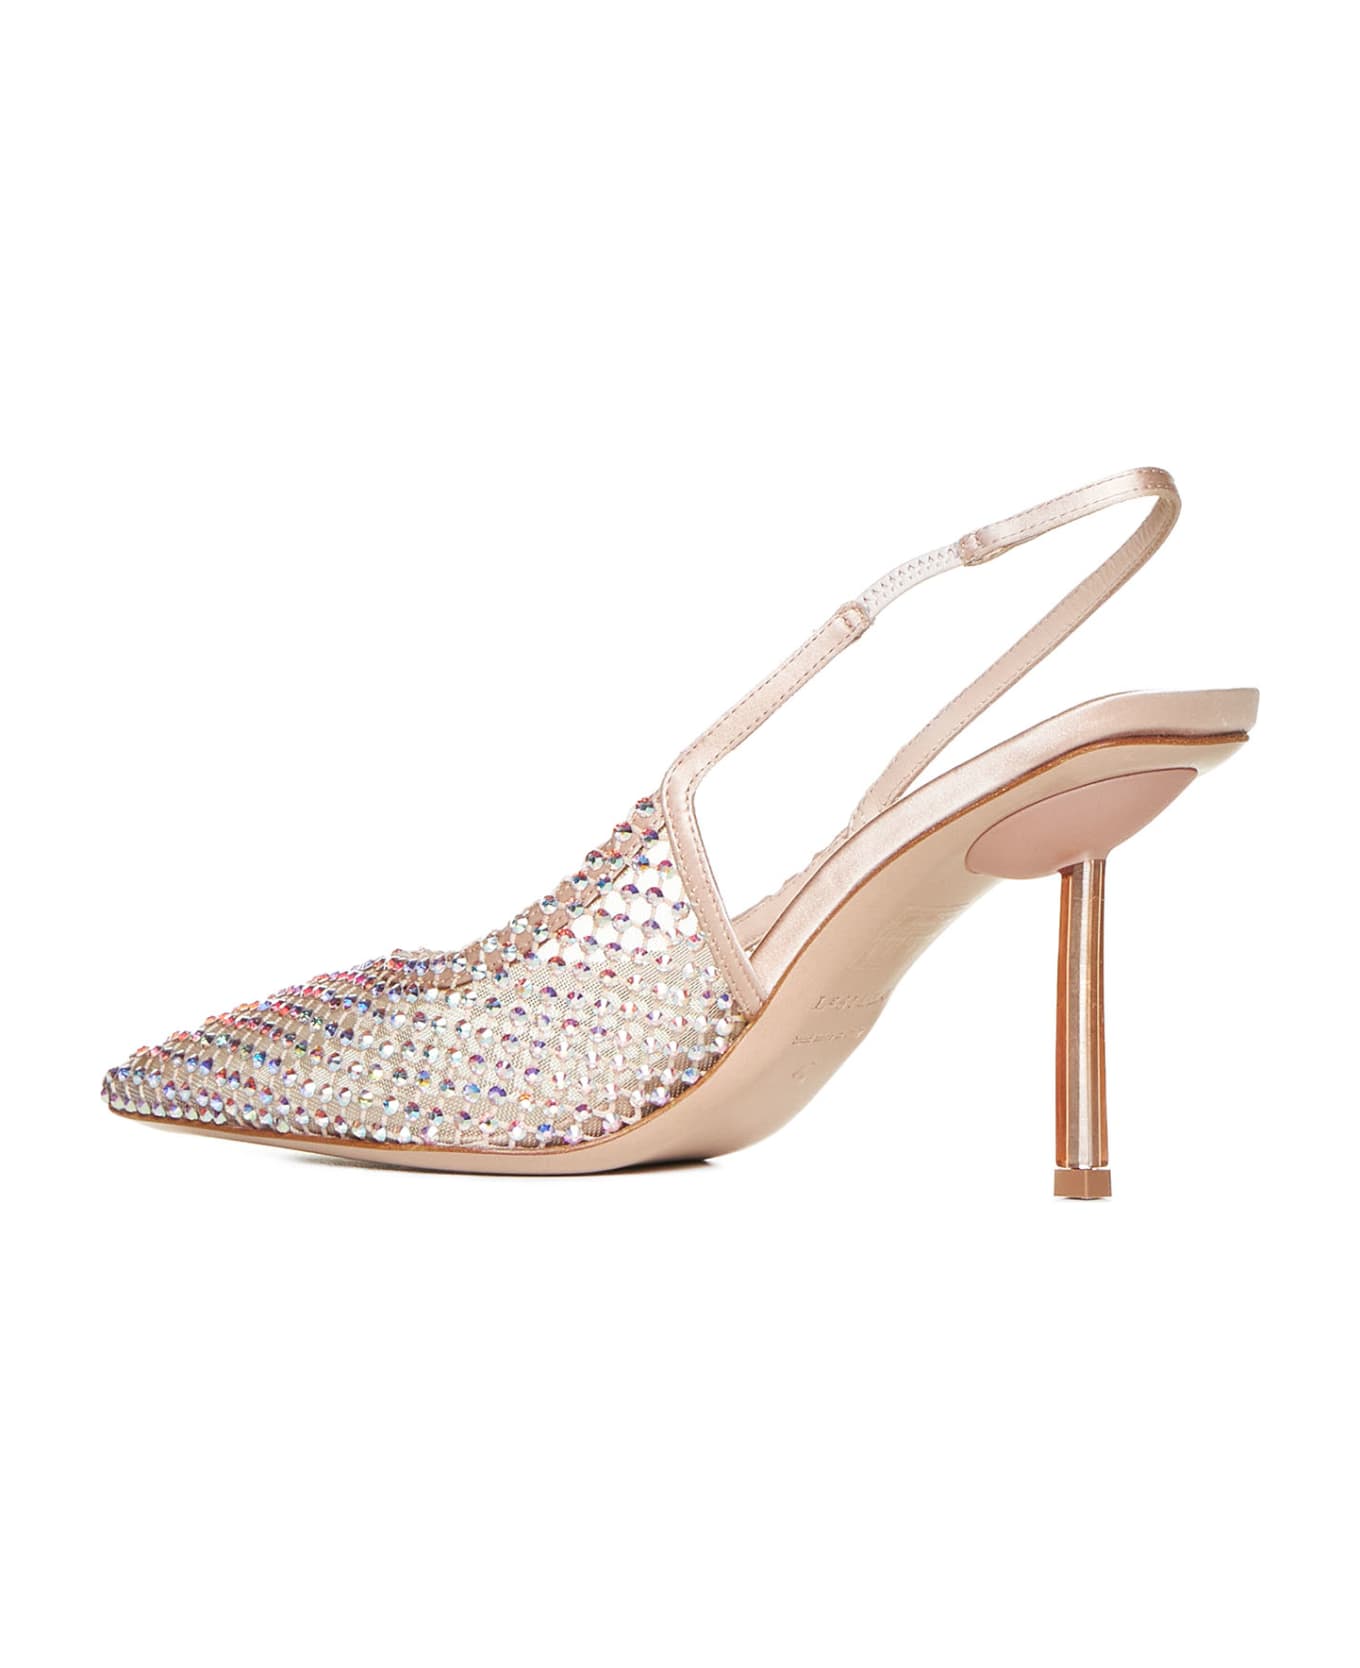 Le Silla High-heeled shoe - Skin